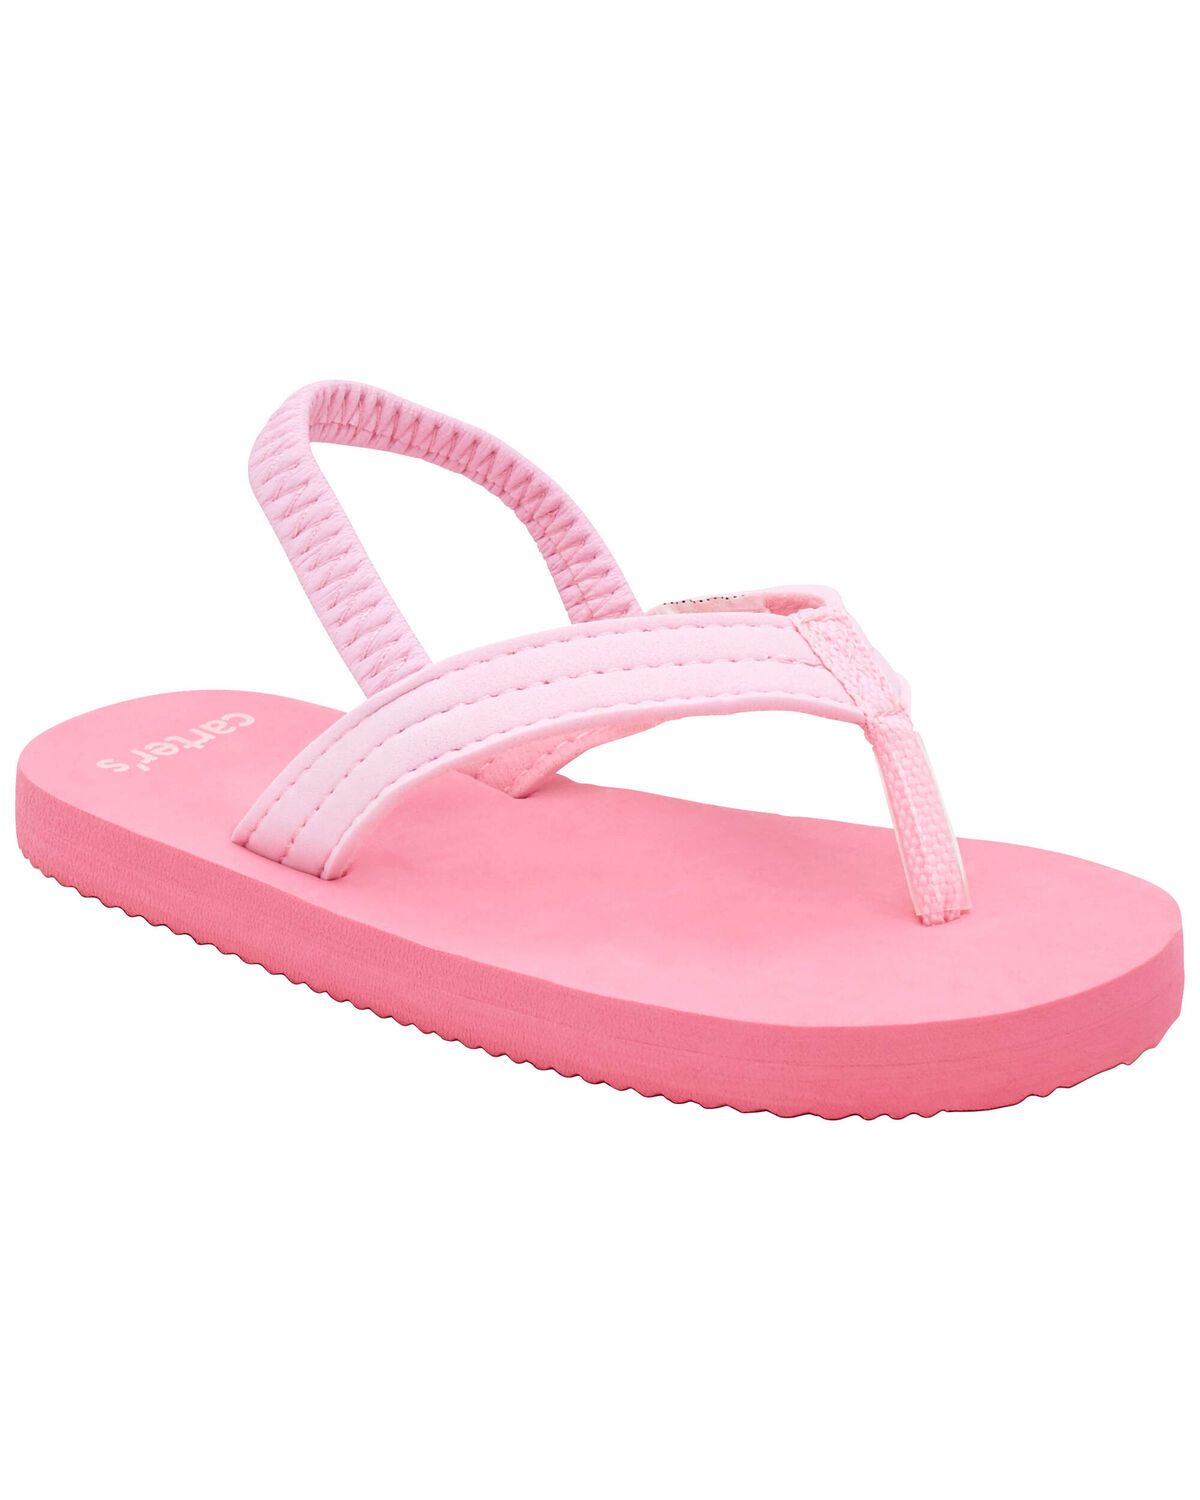 Pink Flip-Flops | carters.com | Carter's